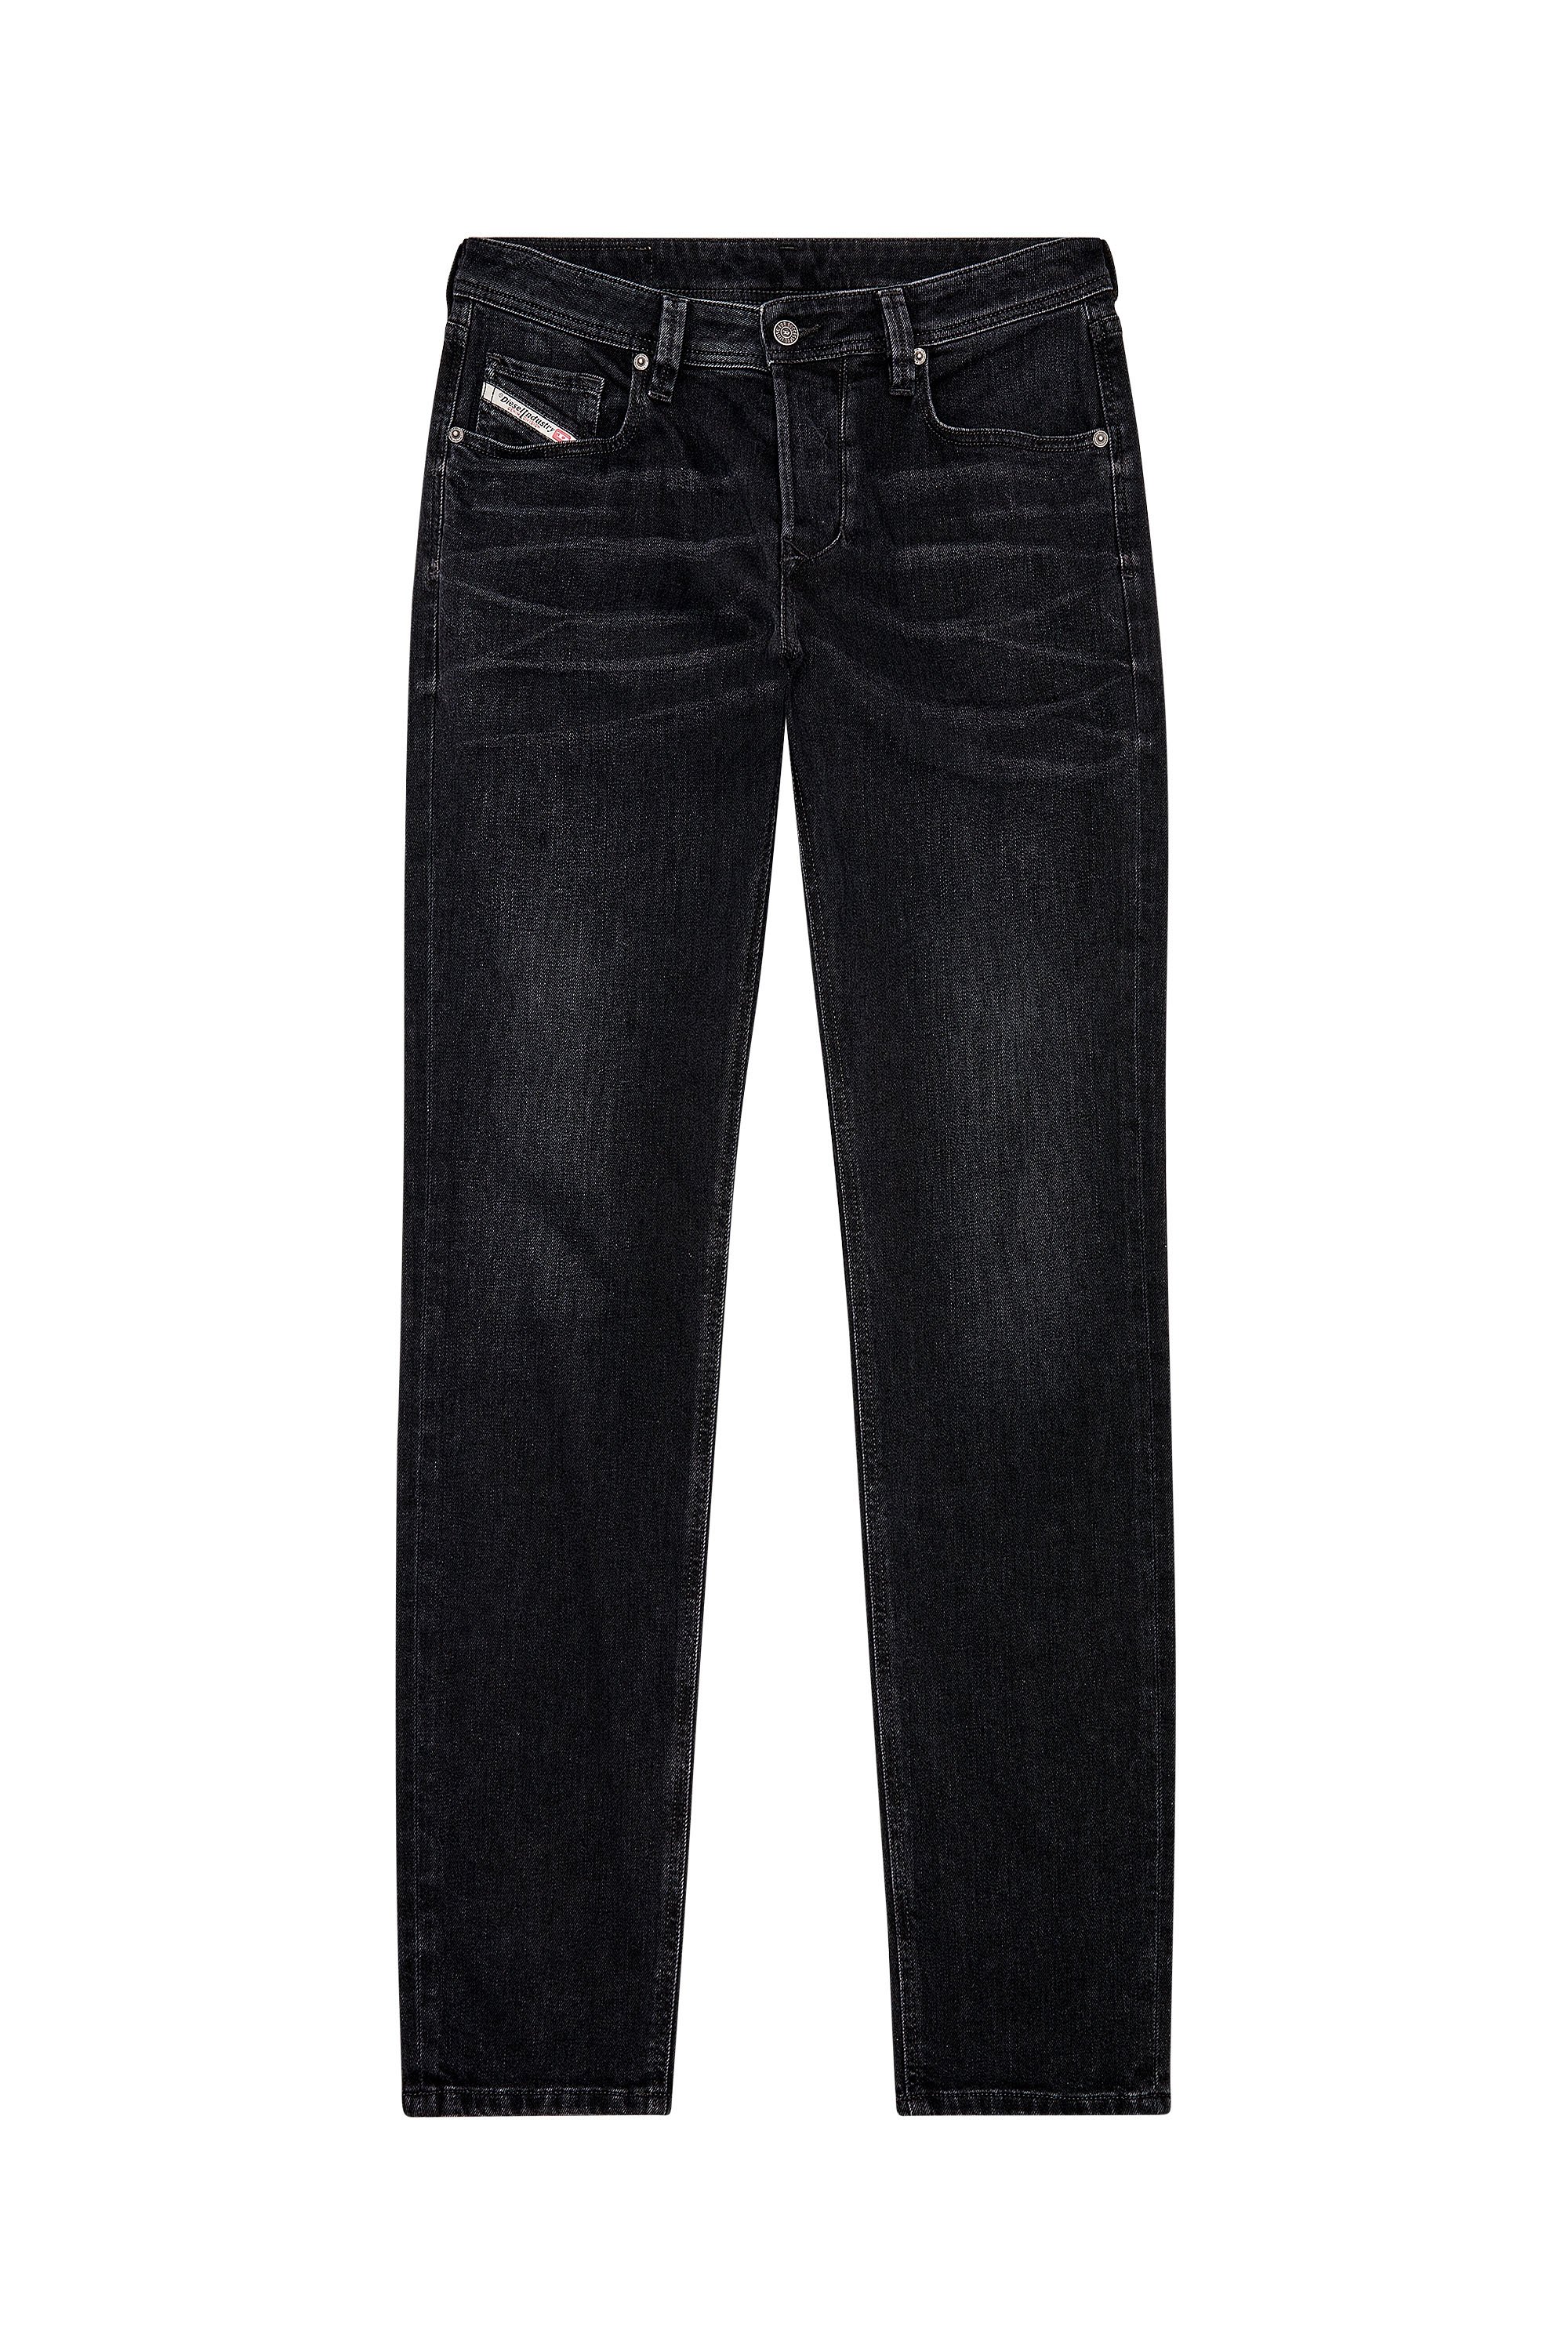 Diesel - Tapered Jeans 1986 Larkee-Beex 09D48, Black/Dark grey - Image 3